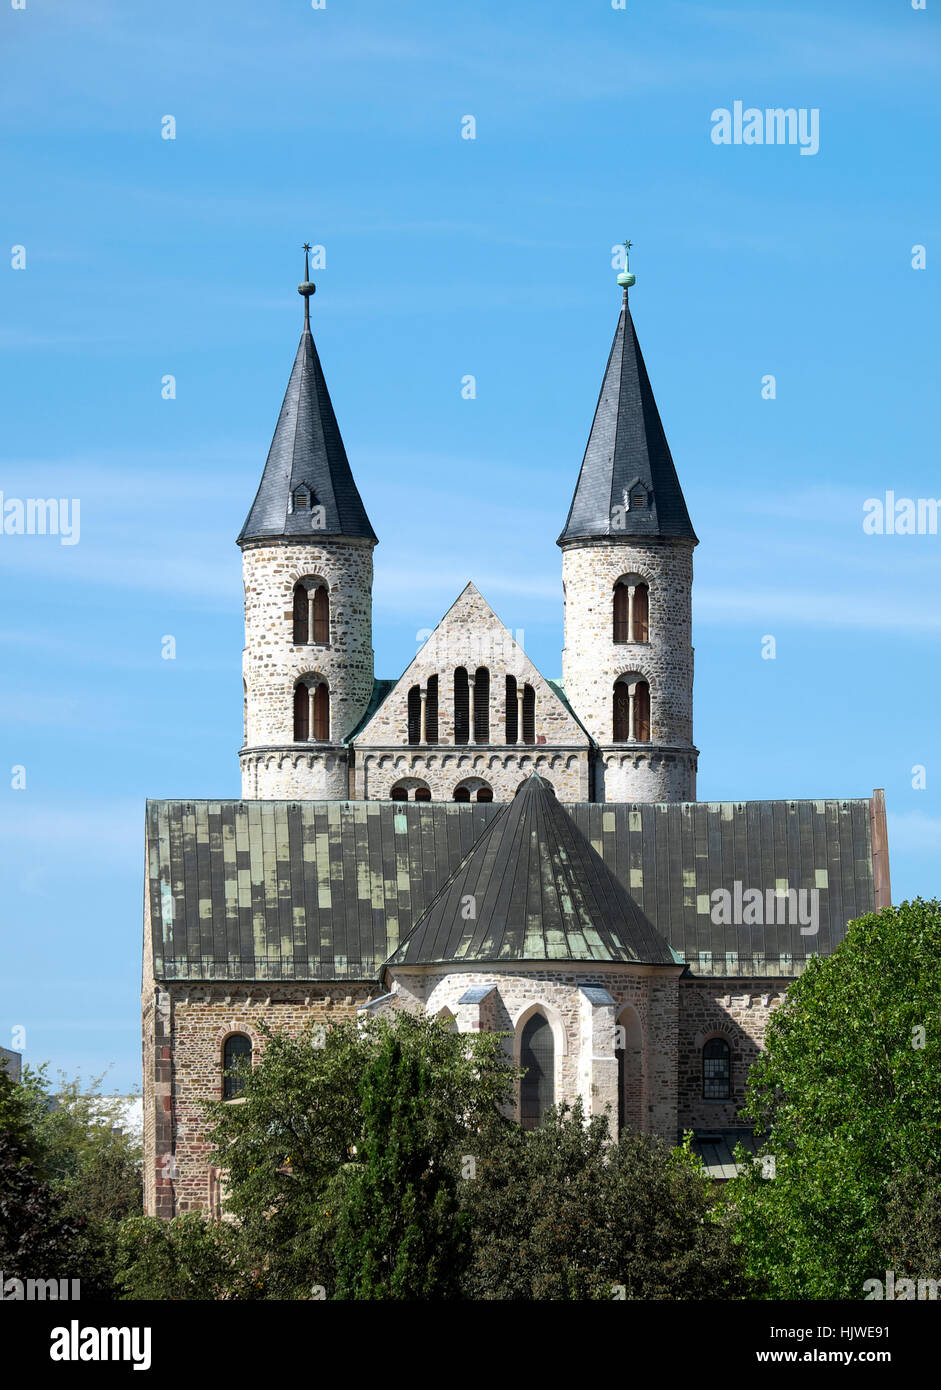 Convent church St. Marien in convent Unser Lieben Frauen, Magdeburg, Saxony-Anhalt, Germany Stock Photo